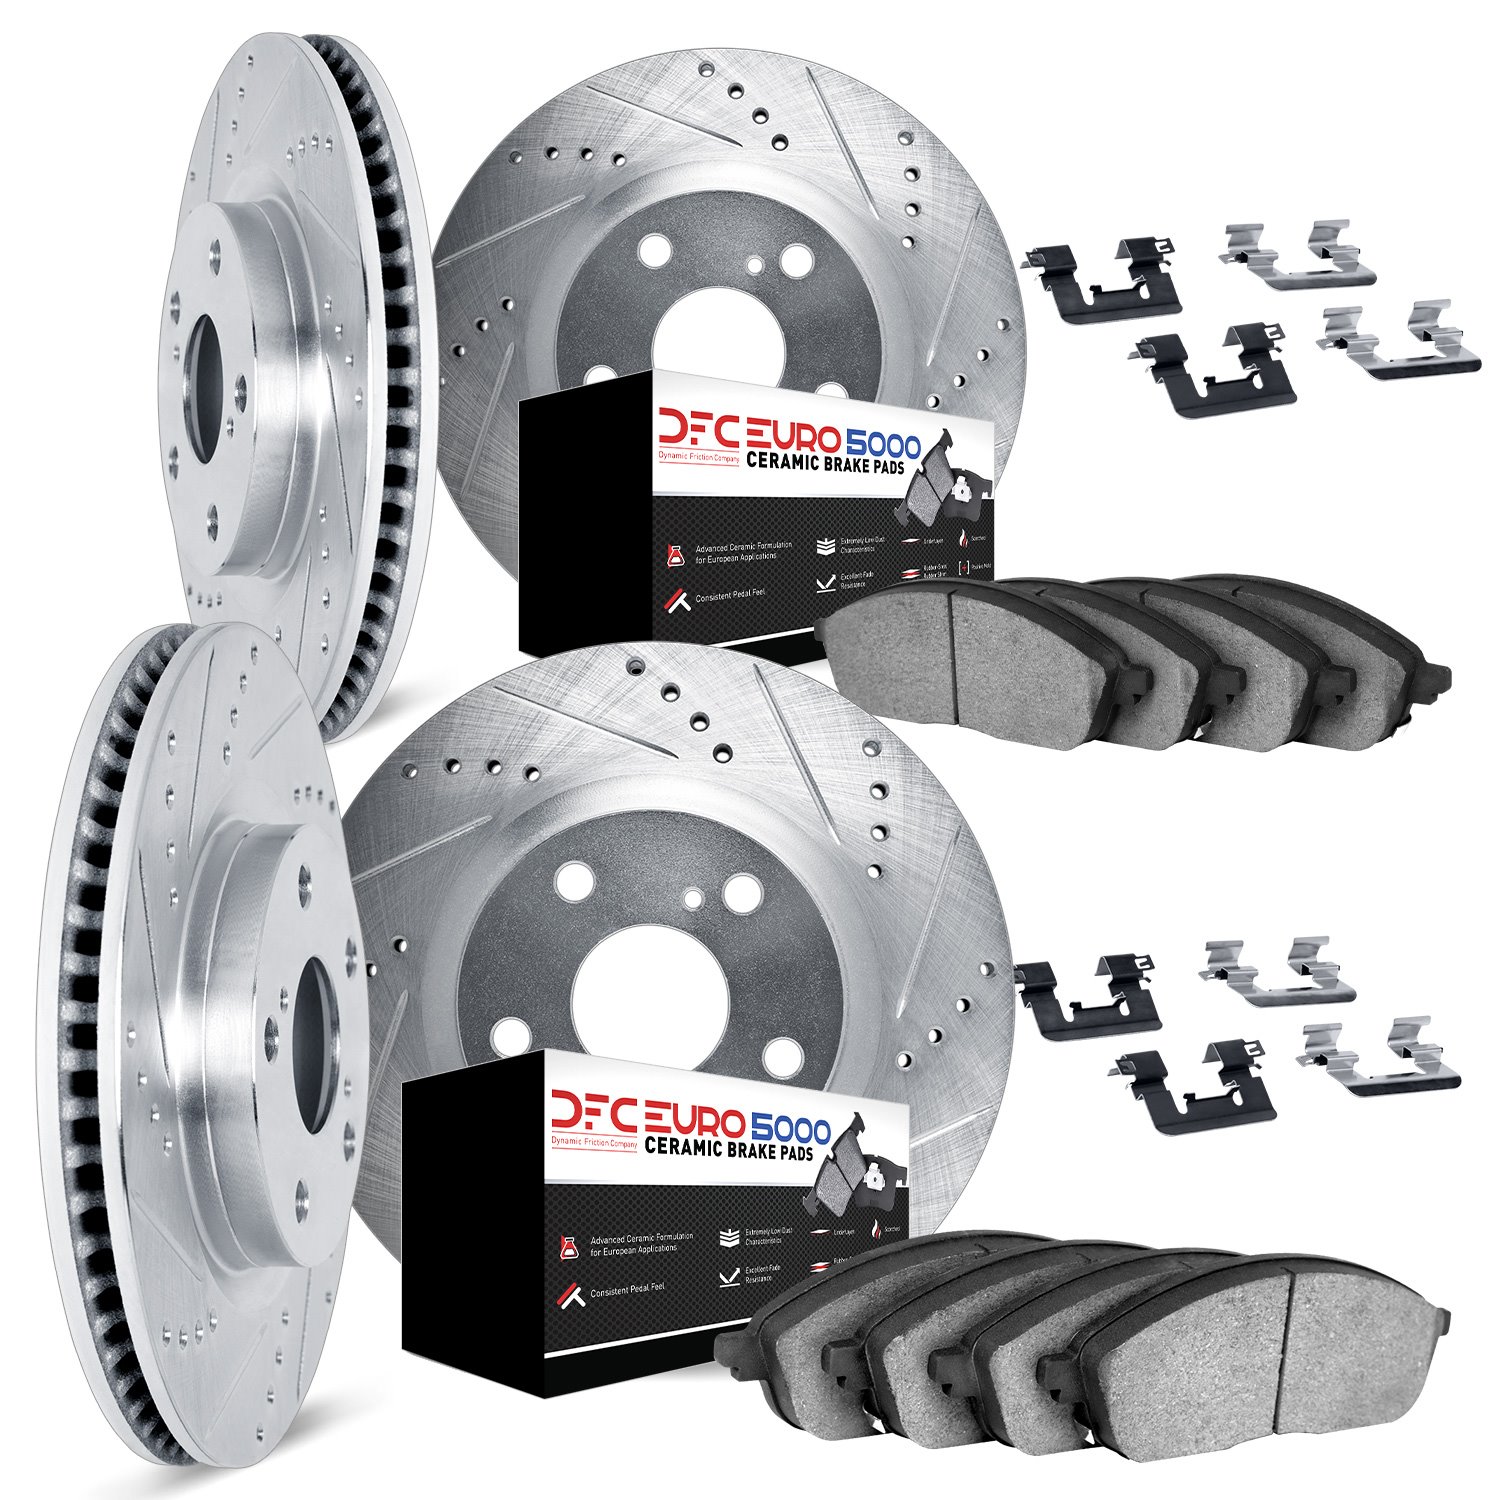 7614-67001 Drilled/Slotted Brake Rotors w/5000 Euro Ceramic Brake Pads Kit & Hardware [Silver], 2005-2020 Infiniti/Nissan, Posit